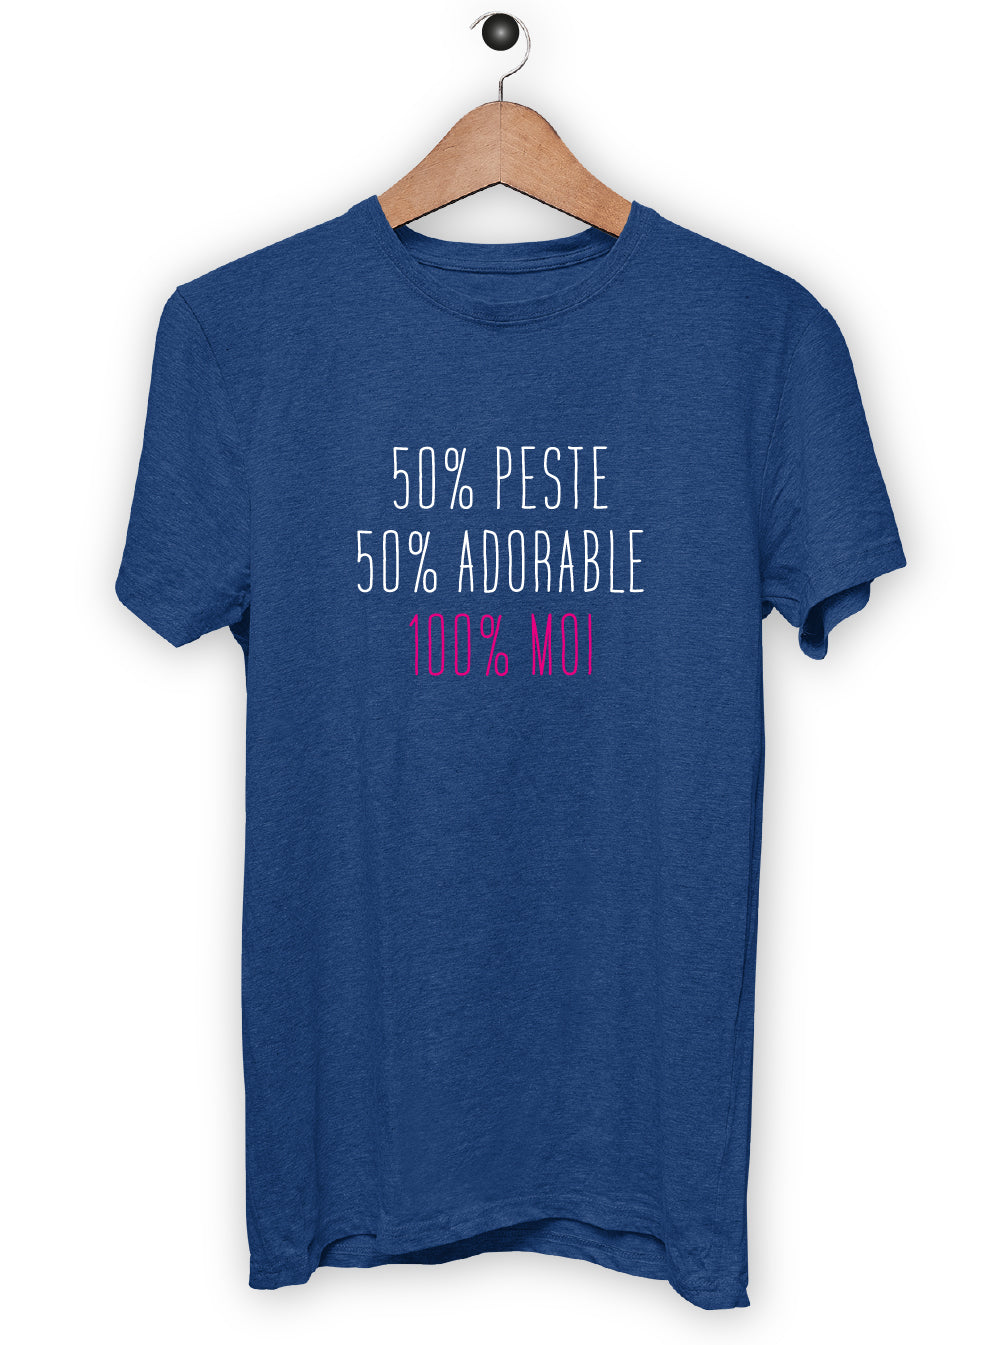 T-Shirt "50% PESTE"